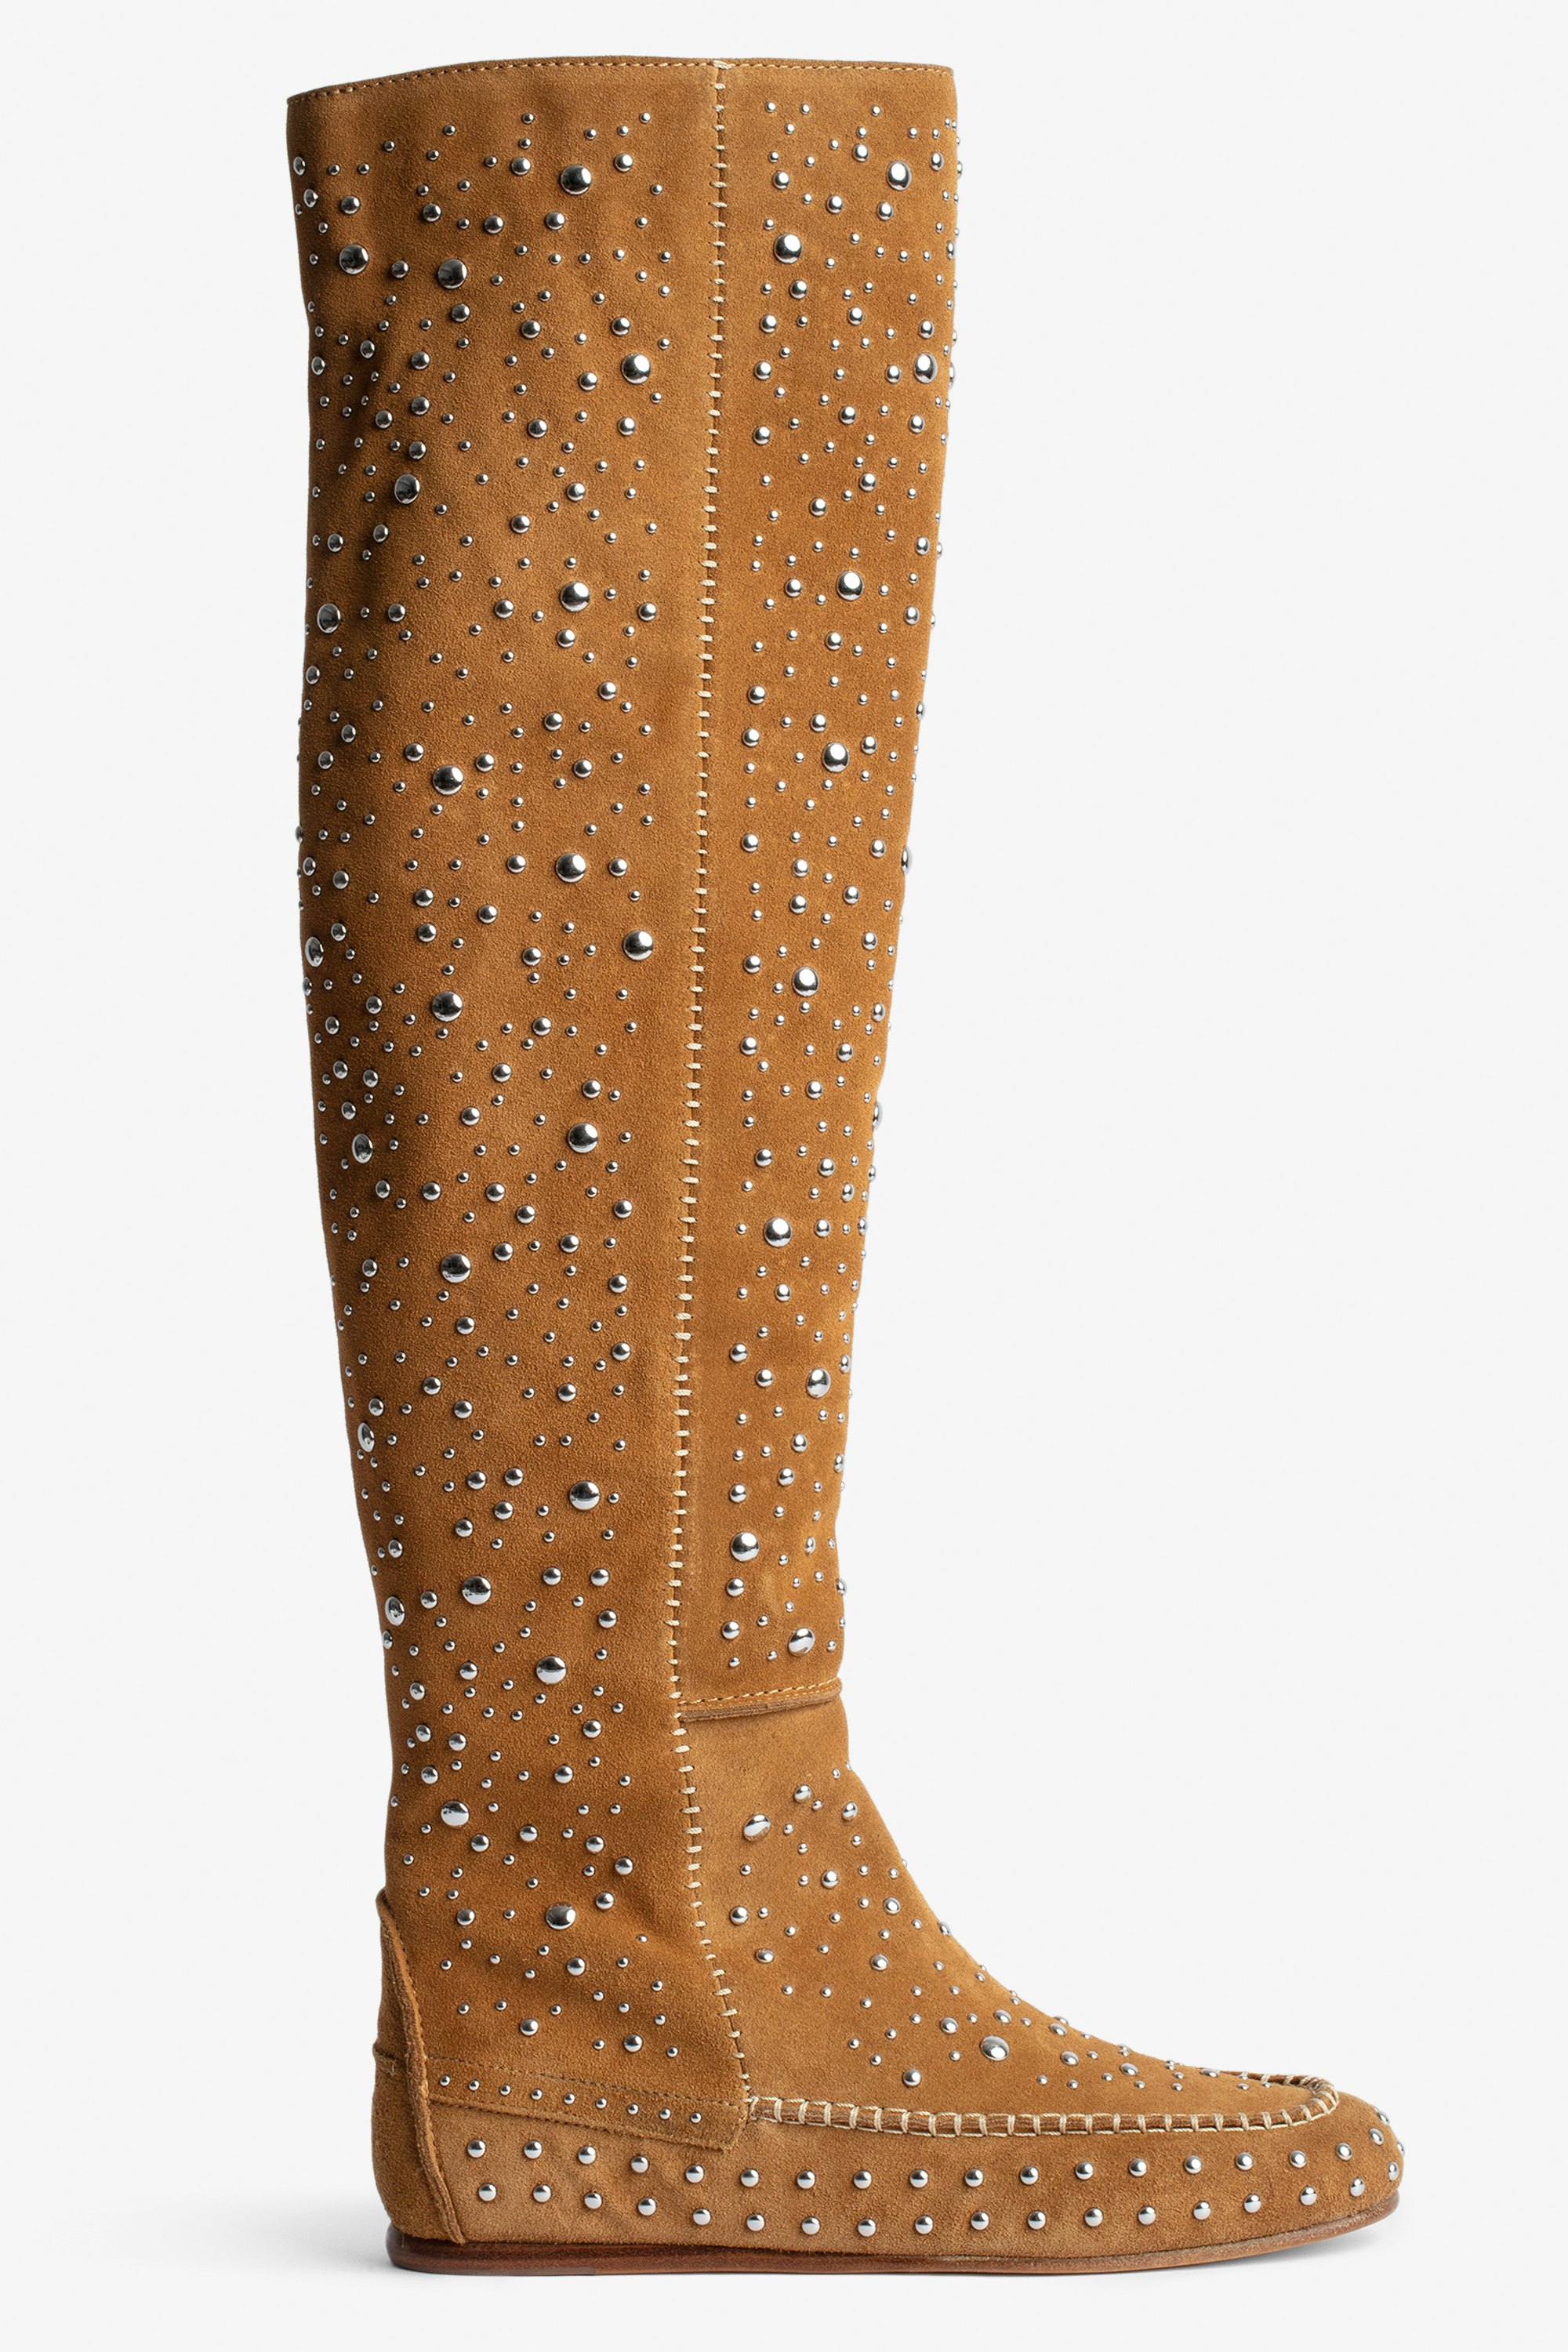 Stiefel Santa Hohe Damenstiefel aus braunem Veloursleder mit silberfarbenen Nieten und Steppnähten